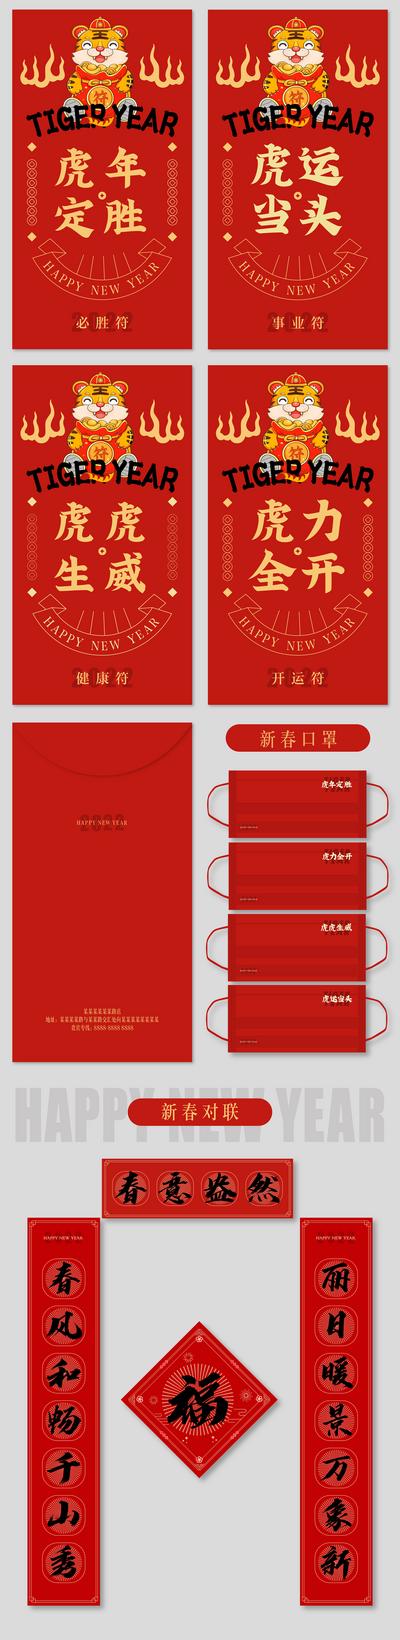 南门网 红包 口罩 对联 中国传统节日 春节 虎年 老虎 文字